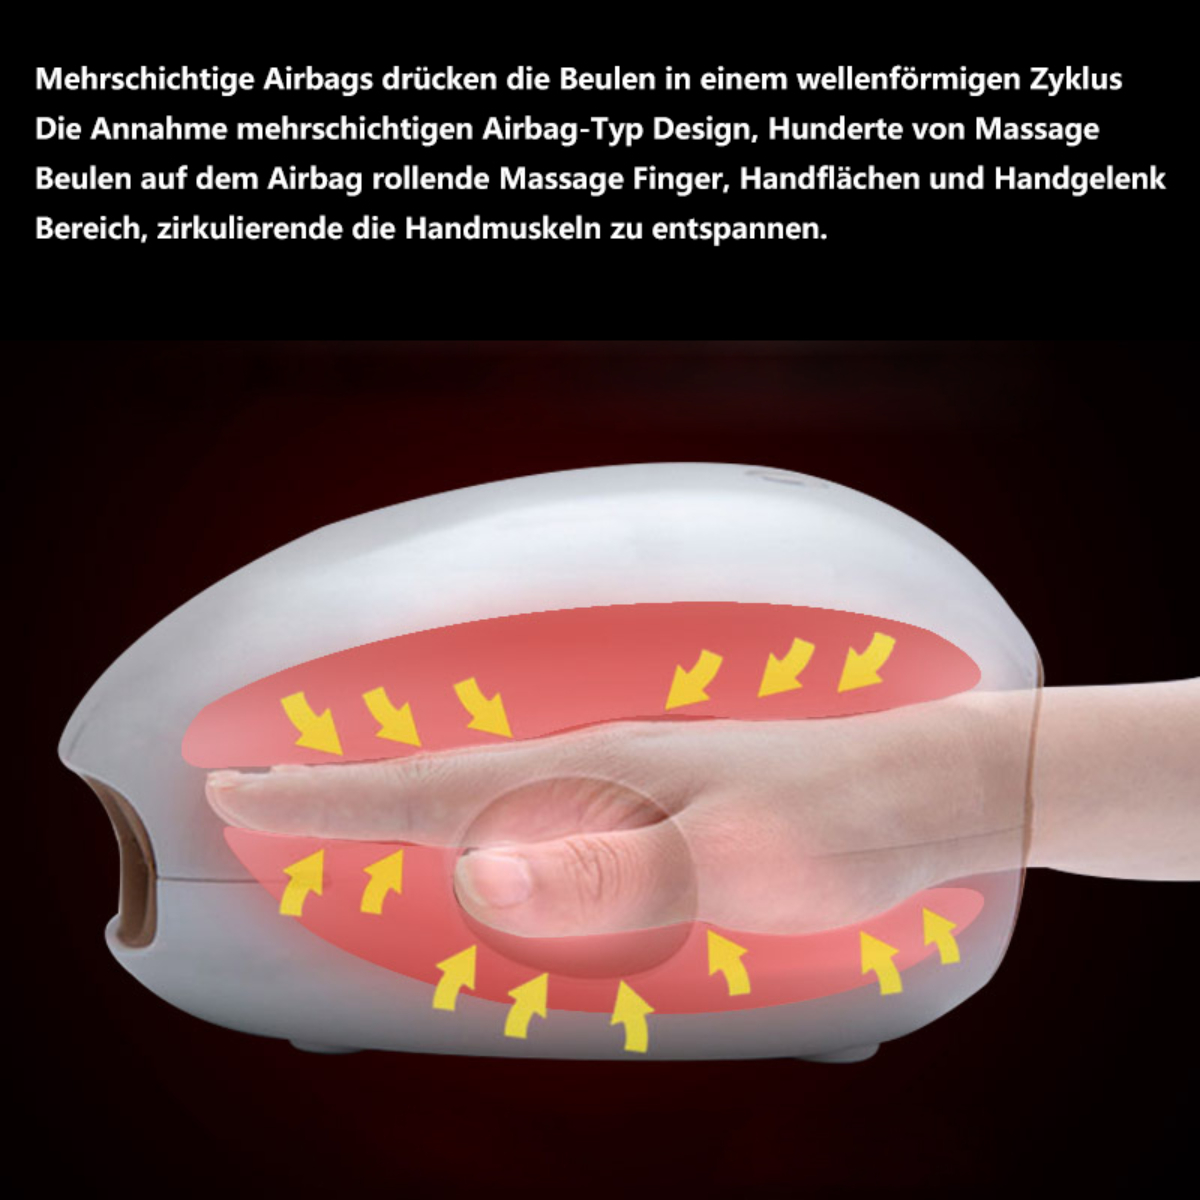 BYTELIKE Handmassagegerät Handmassagegerät Hot Palm Handmassagegerät Physiotherapie Kneten Airbag Massager Fingergelenk